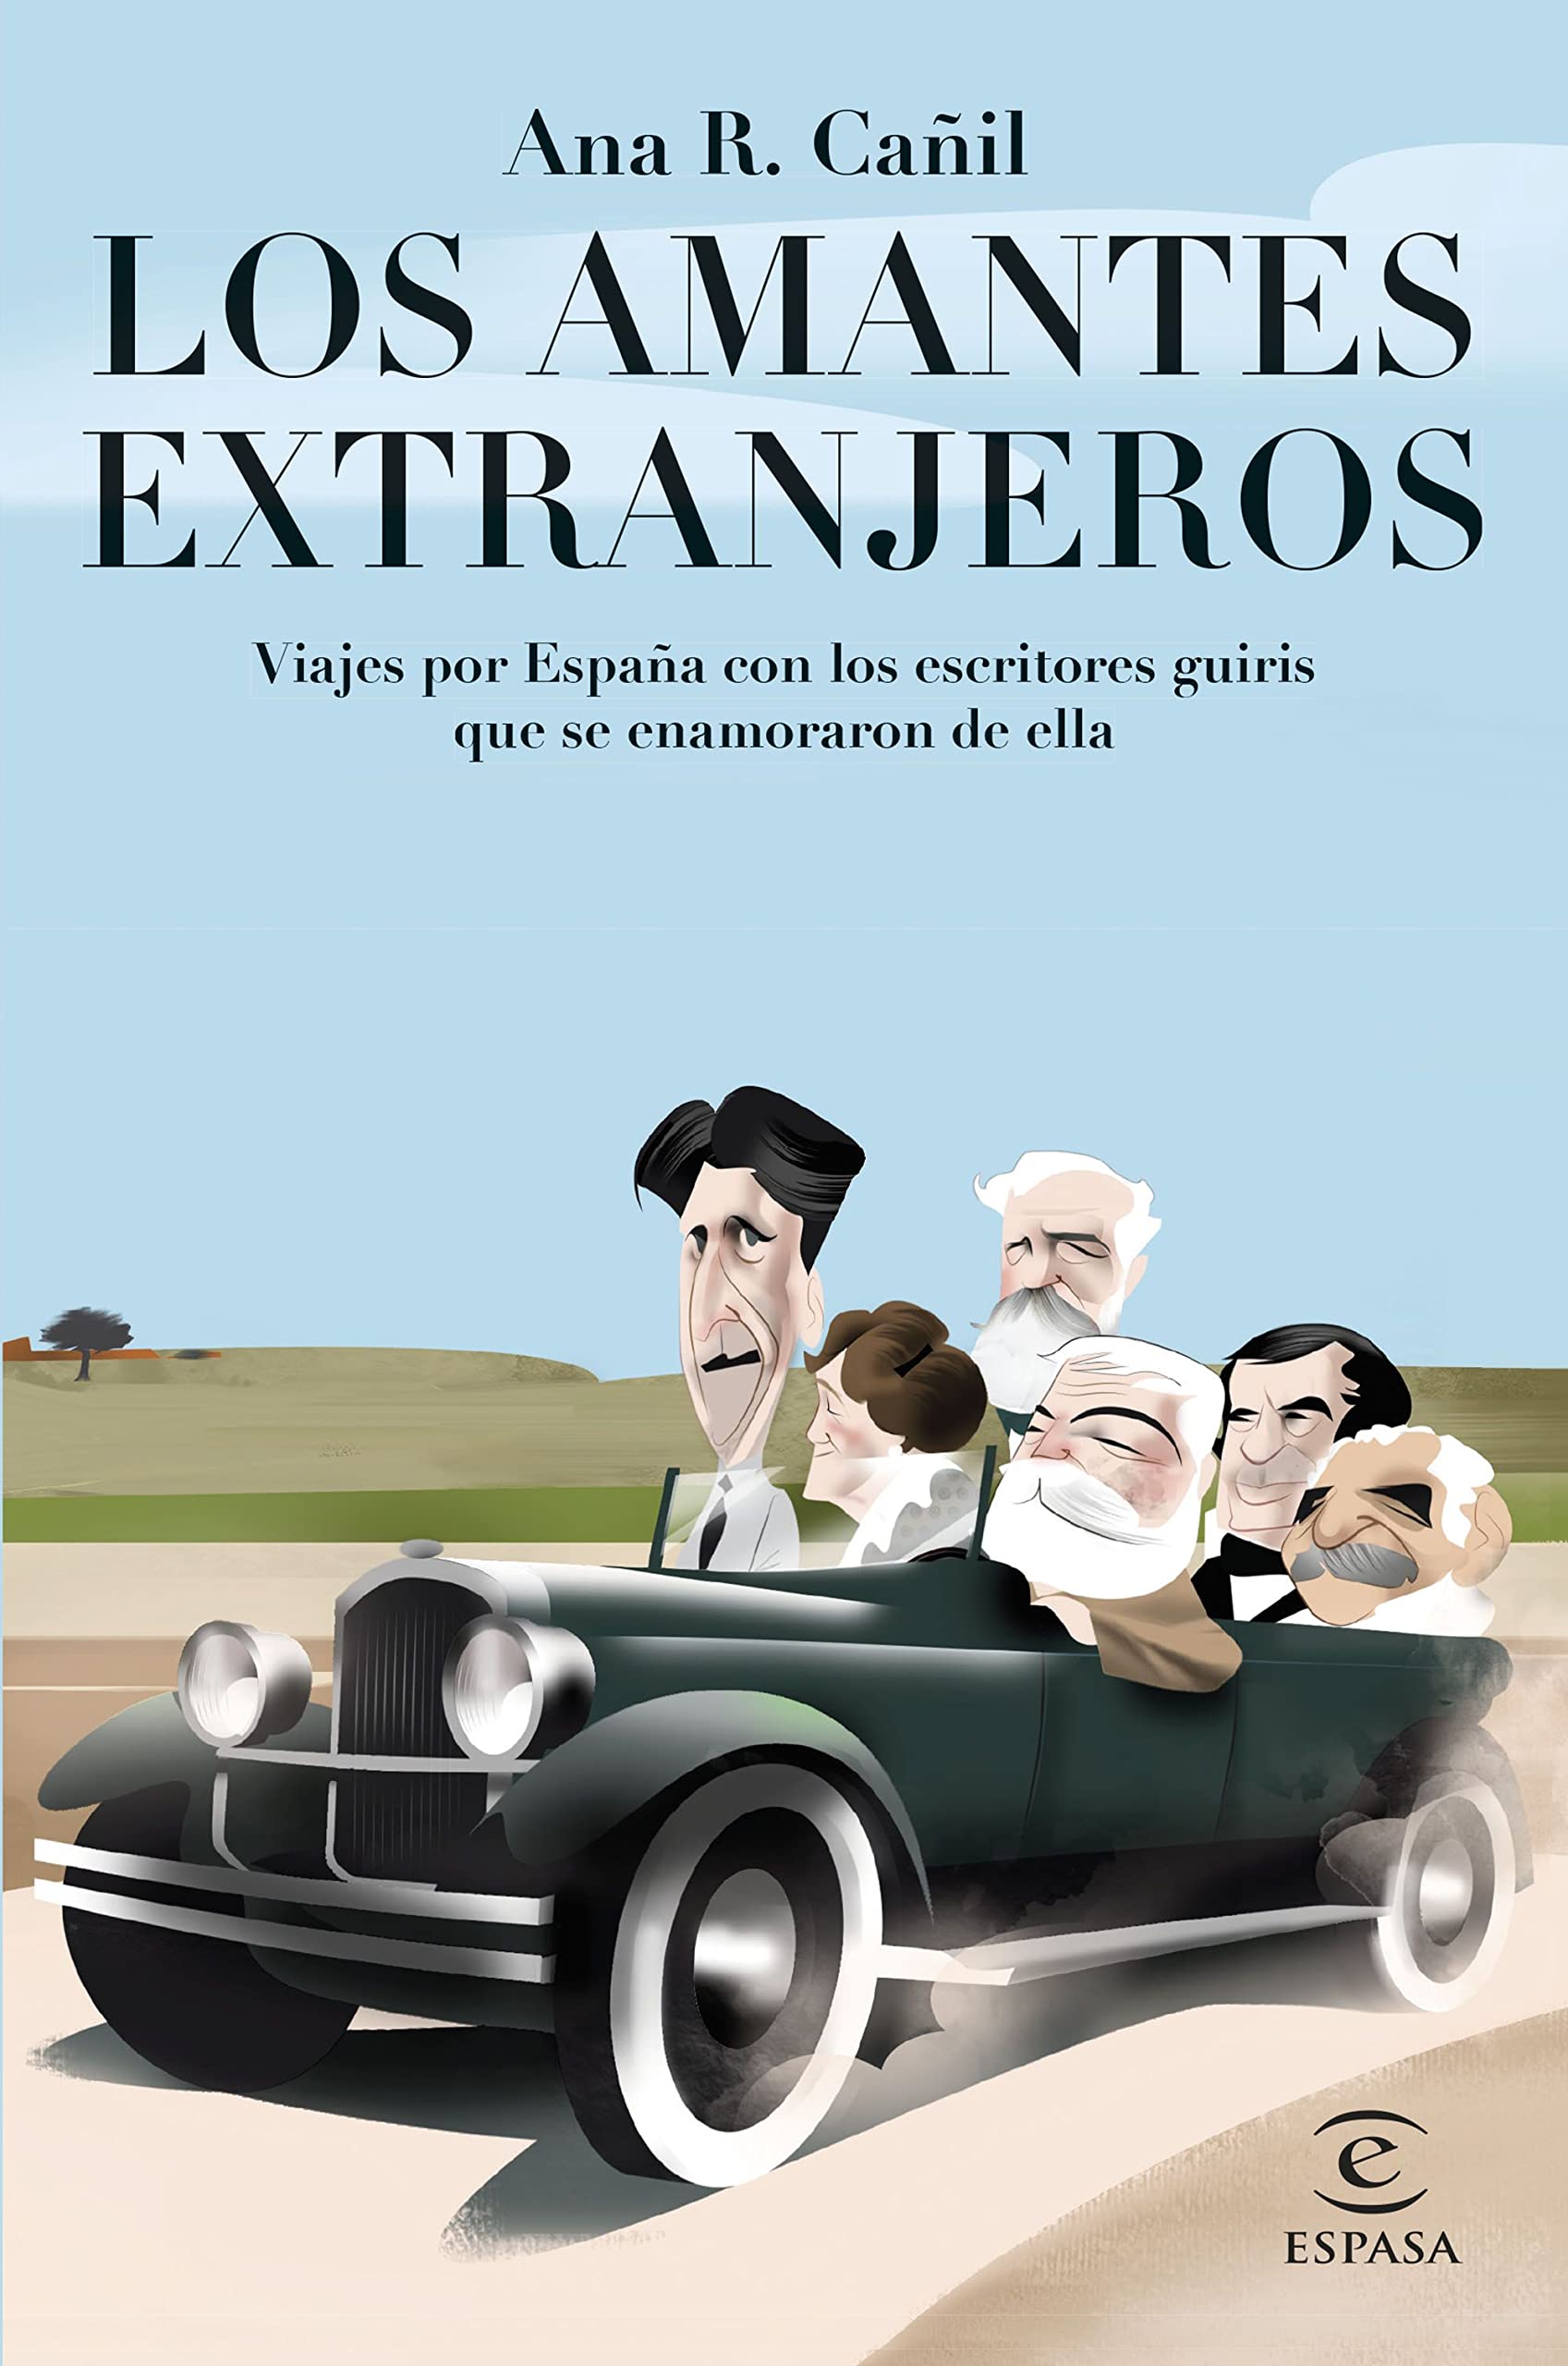 España desde los ojos de Julio Verne, George Orwell y Hans Christian Andersen